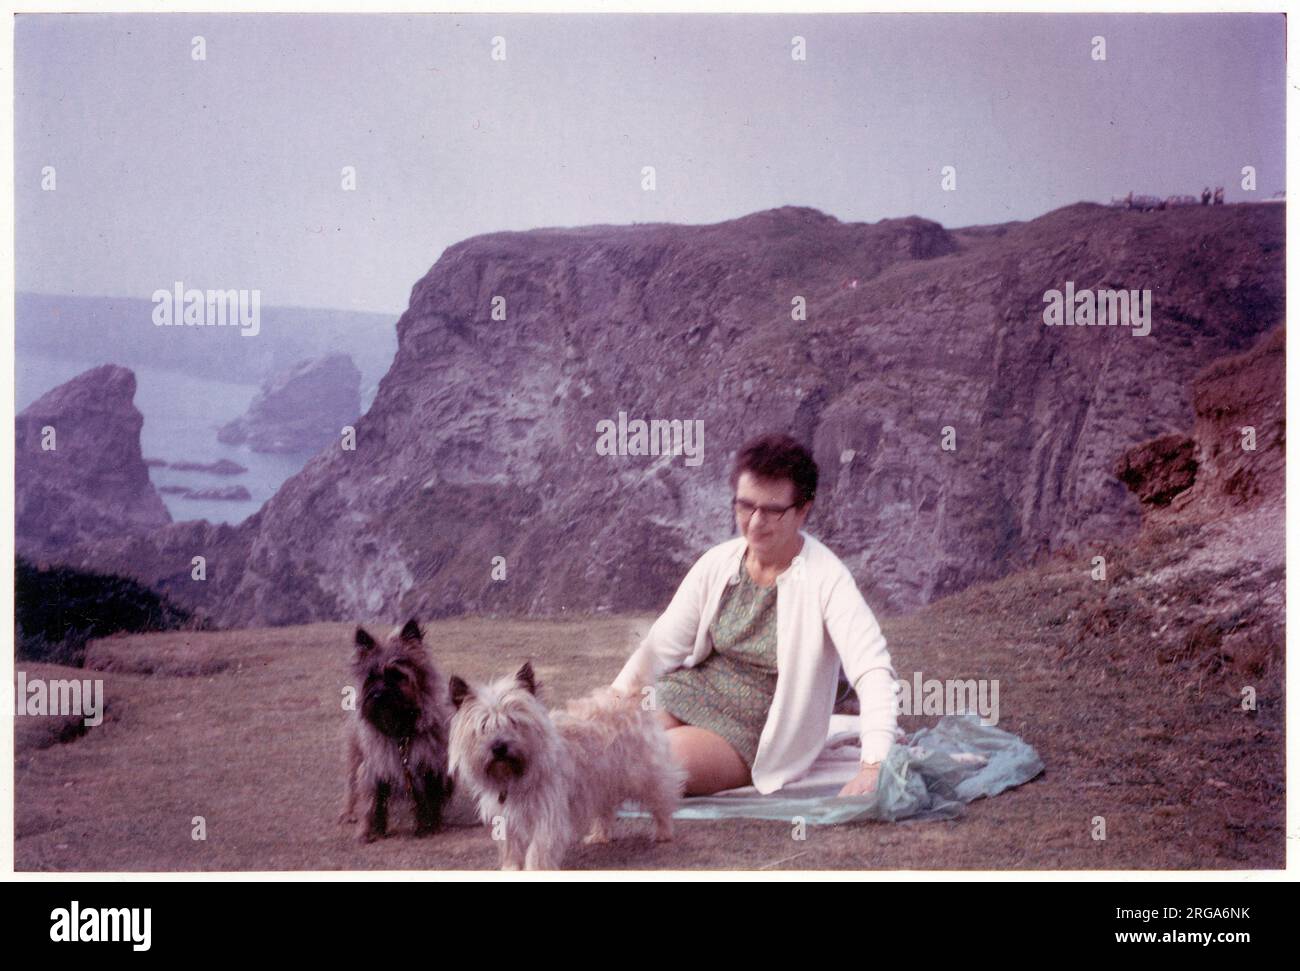 Una signora con i suoi due terrieri animali, rilassarsi su un telo da spiaggia, che domina un tratto di costa rocciosa (possibilmente in Devon o Cornovaglia) - Agosto, 1970 Foto Stock